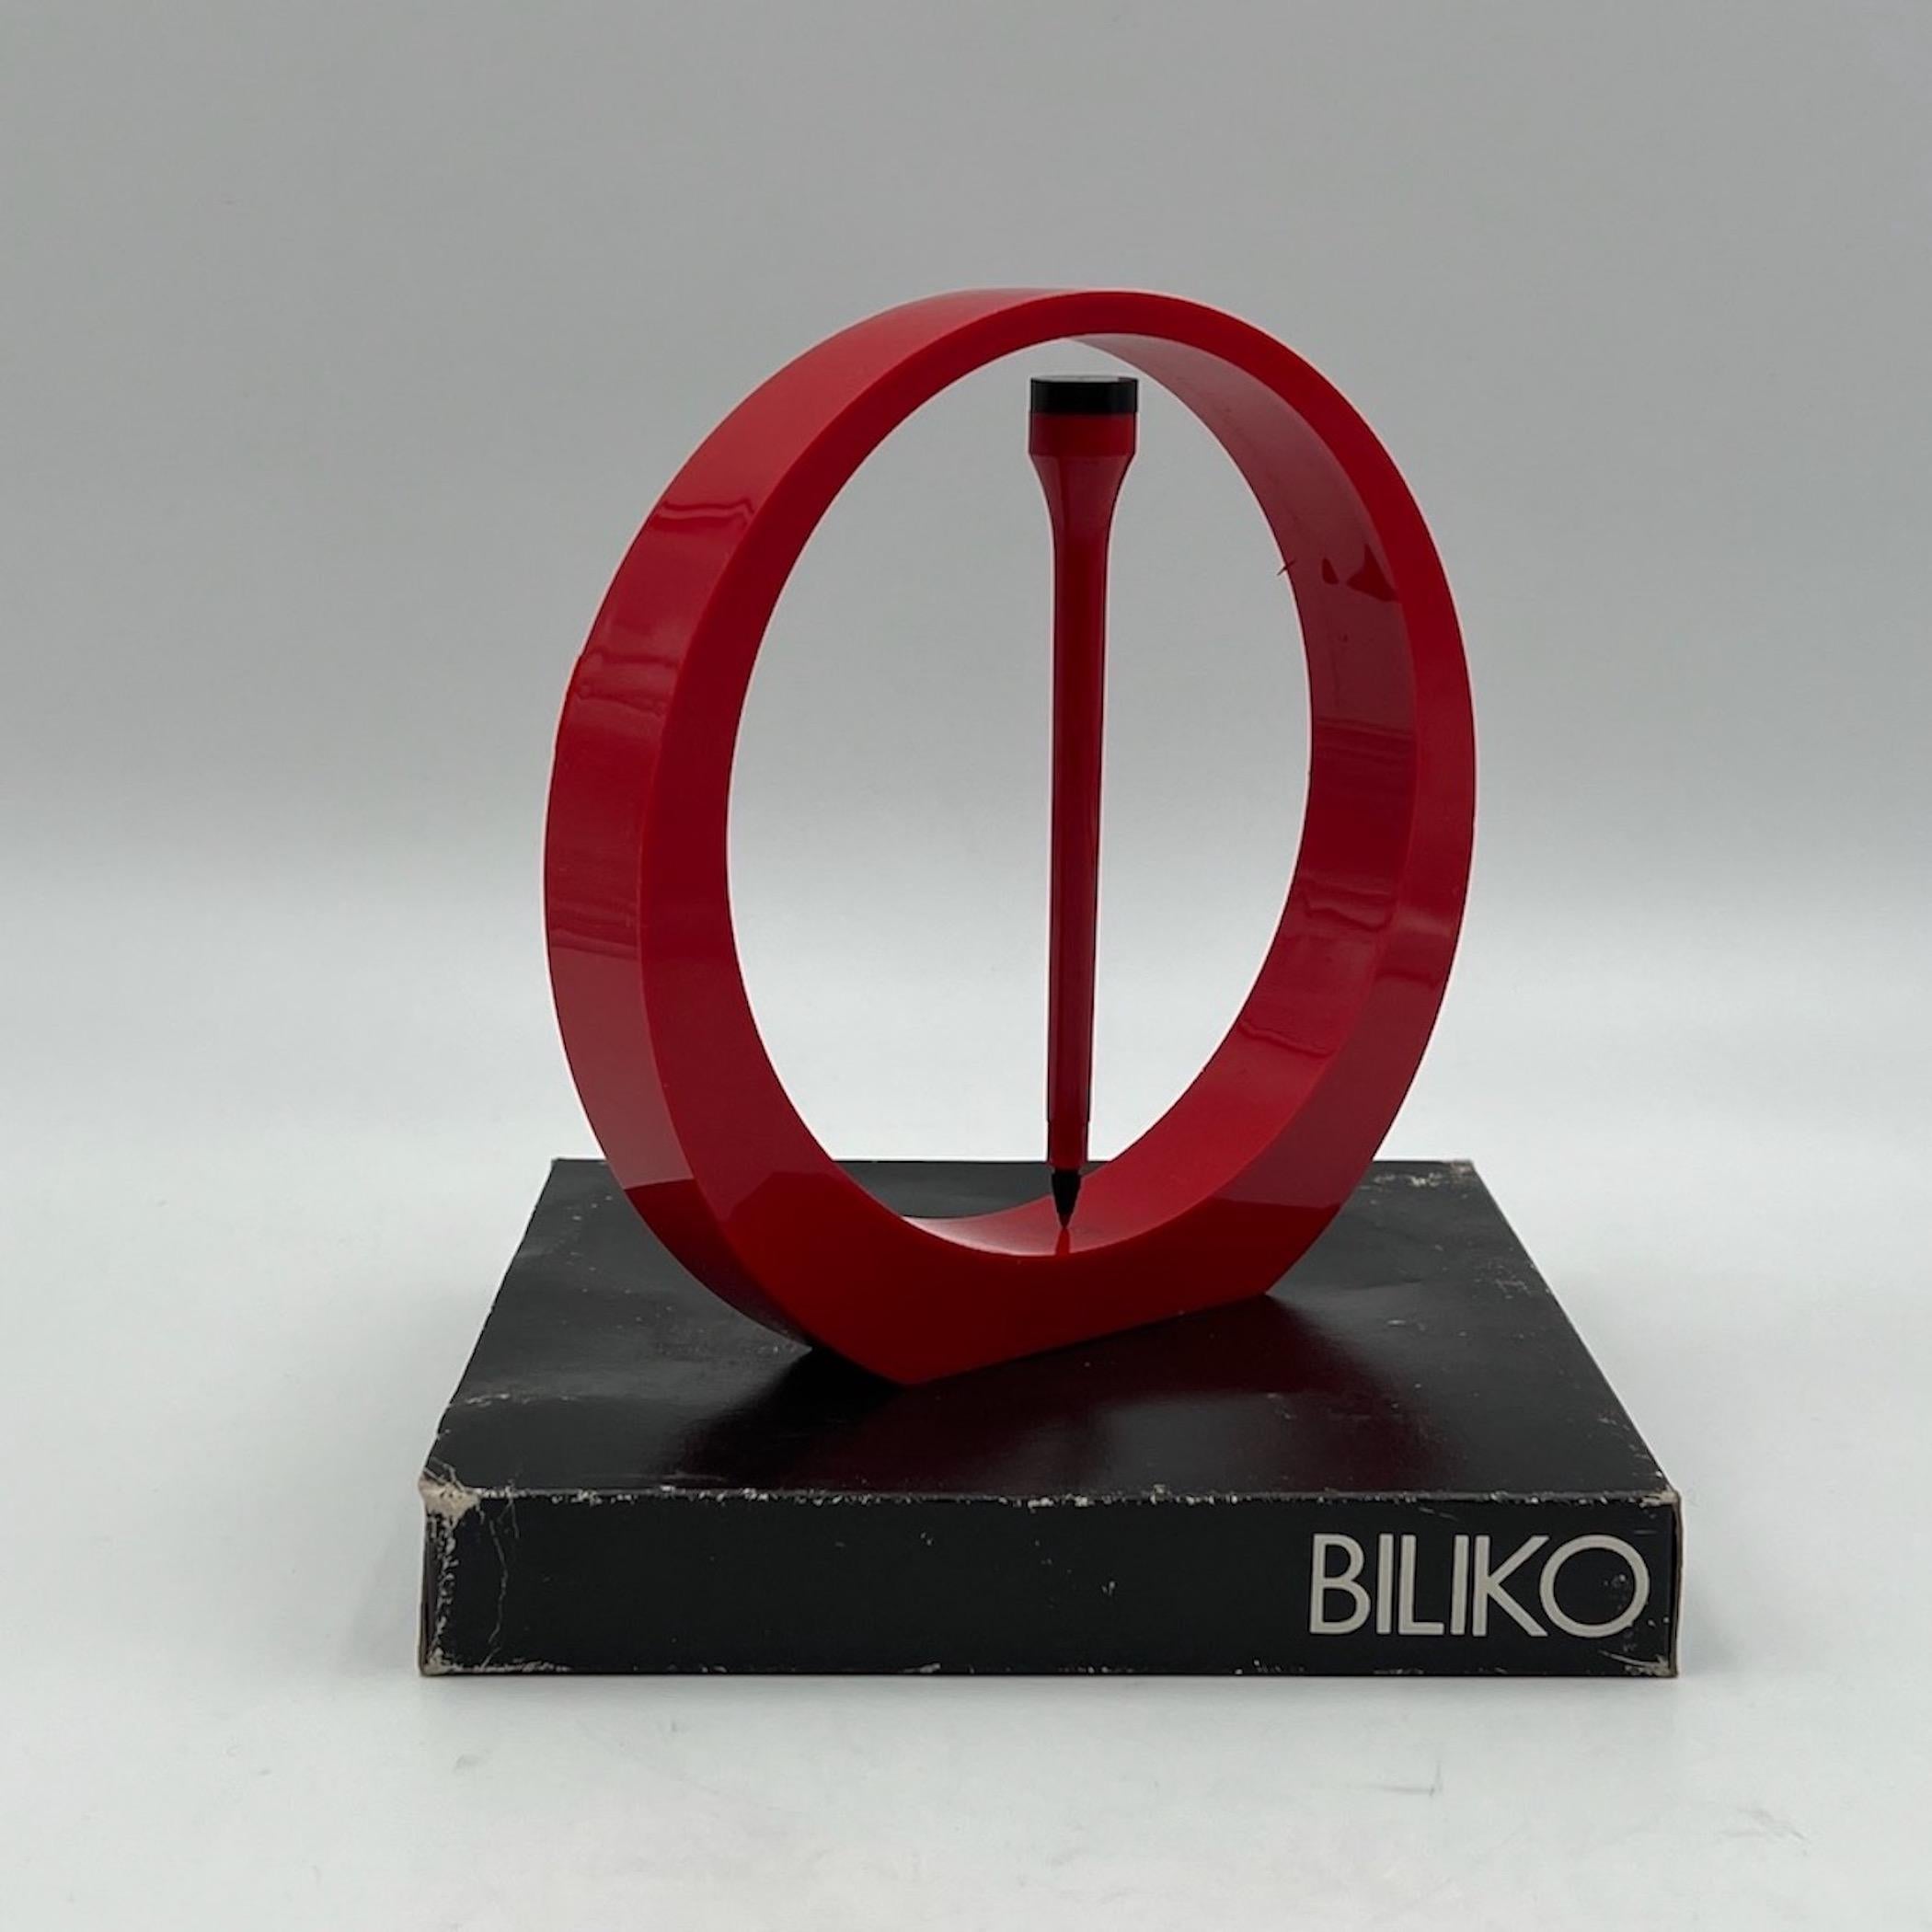 Auffälliges und seltenes Schreibset 'Biliko', mit stilvoller runder Halterung und passendem Stift, hergestellt in Italien in den 70er Jahren.

Biliko (eigentlich 'bilico') ist das italienische Wort für 'Gleichgewicht' oder 'Drehpunkt'. Die